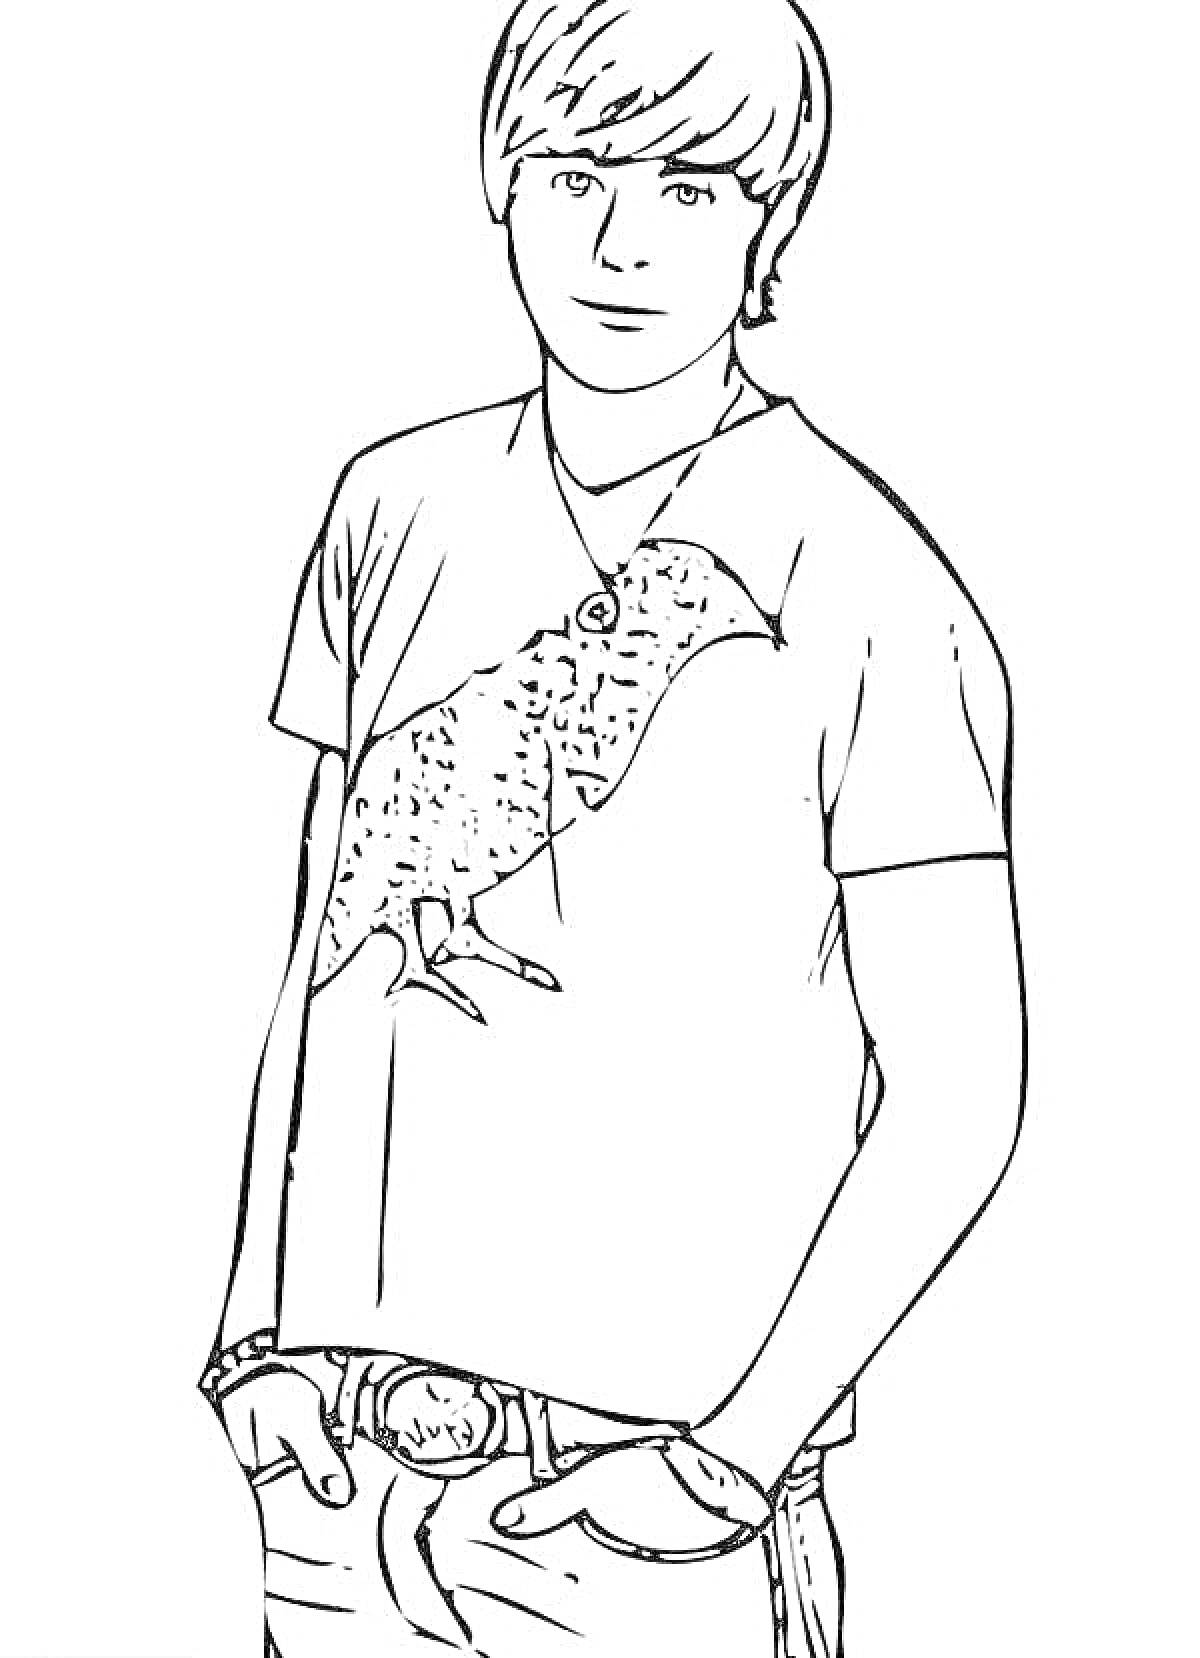 Парень в футболке с изображением птицы, руки в карманах